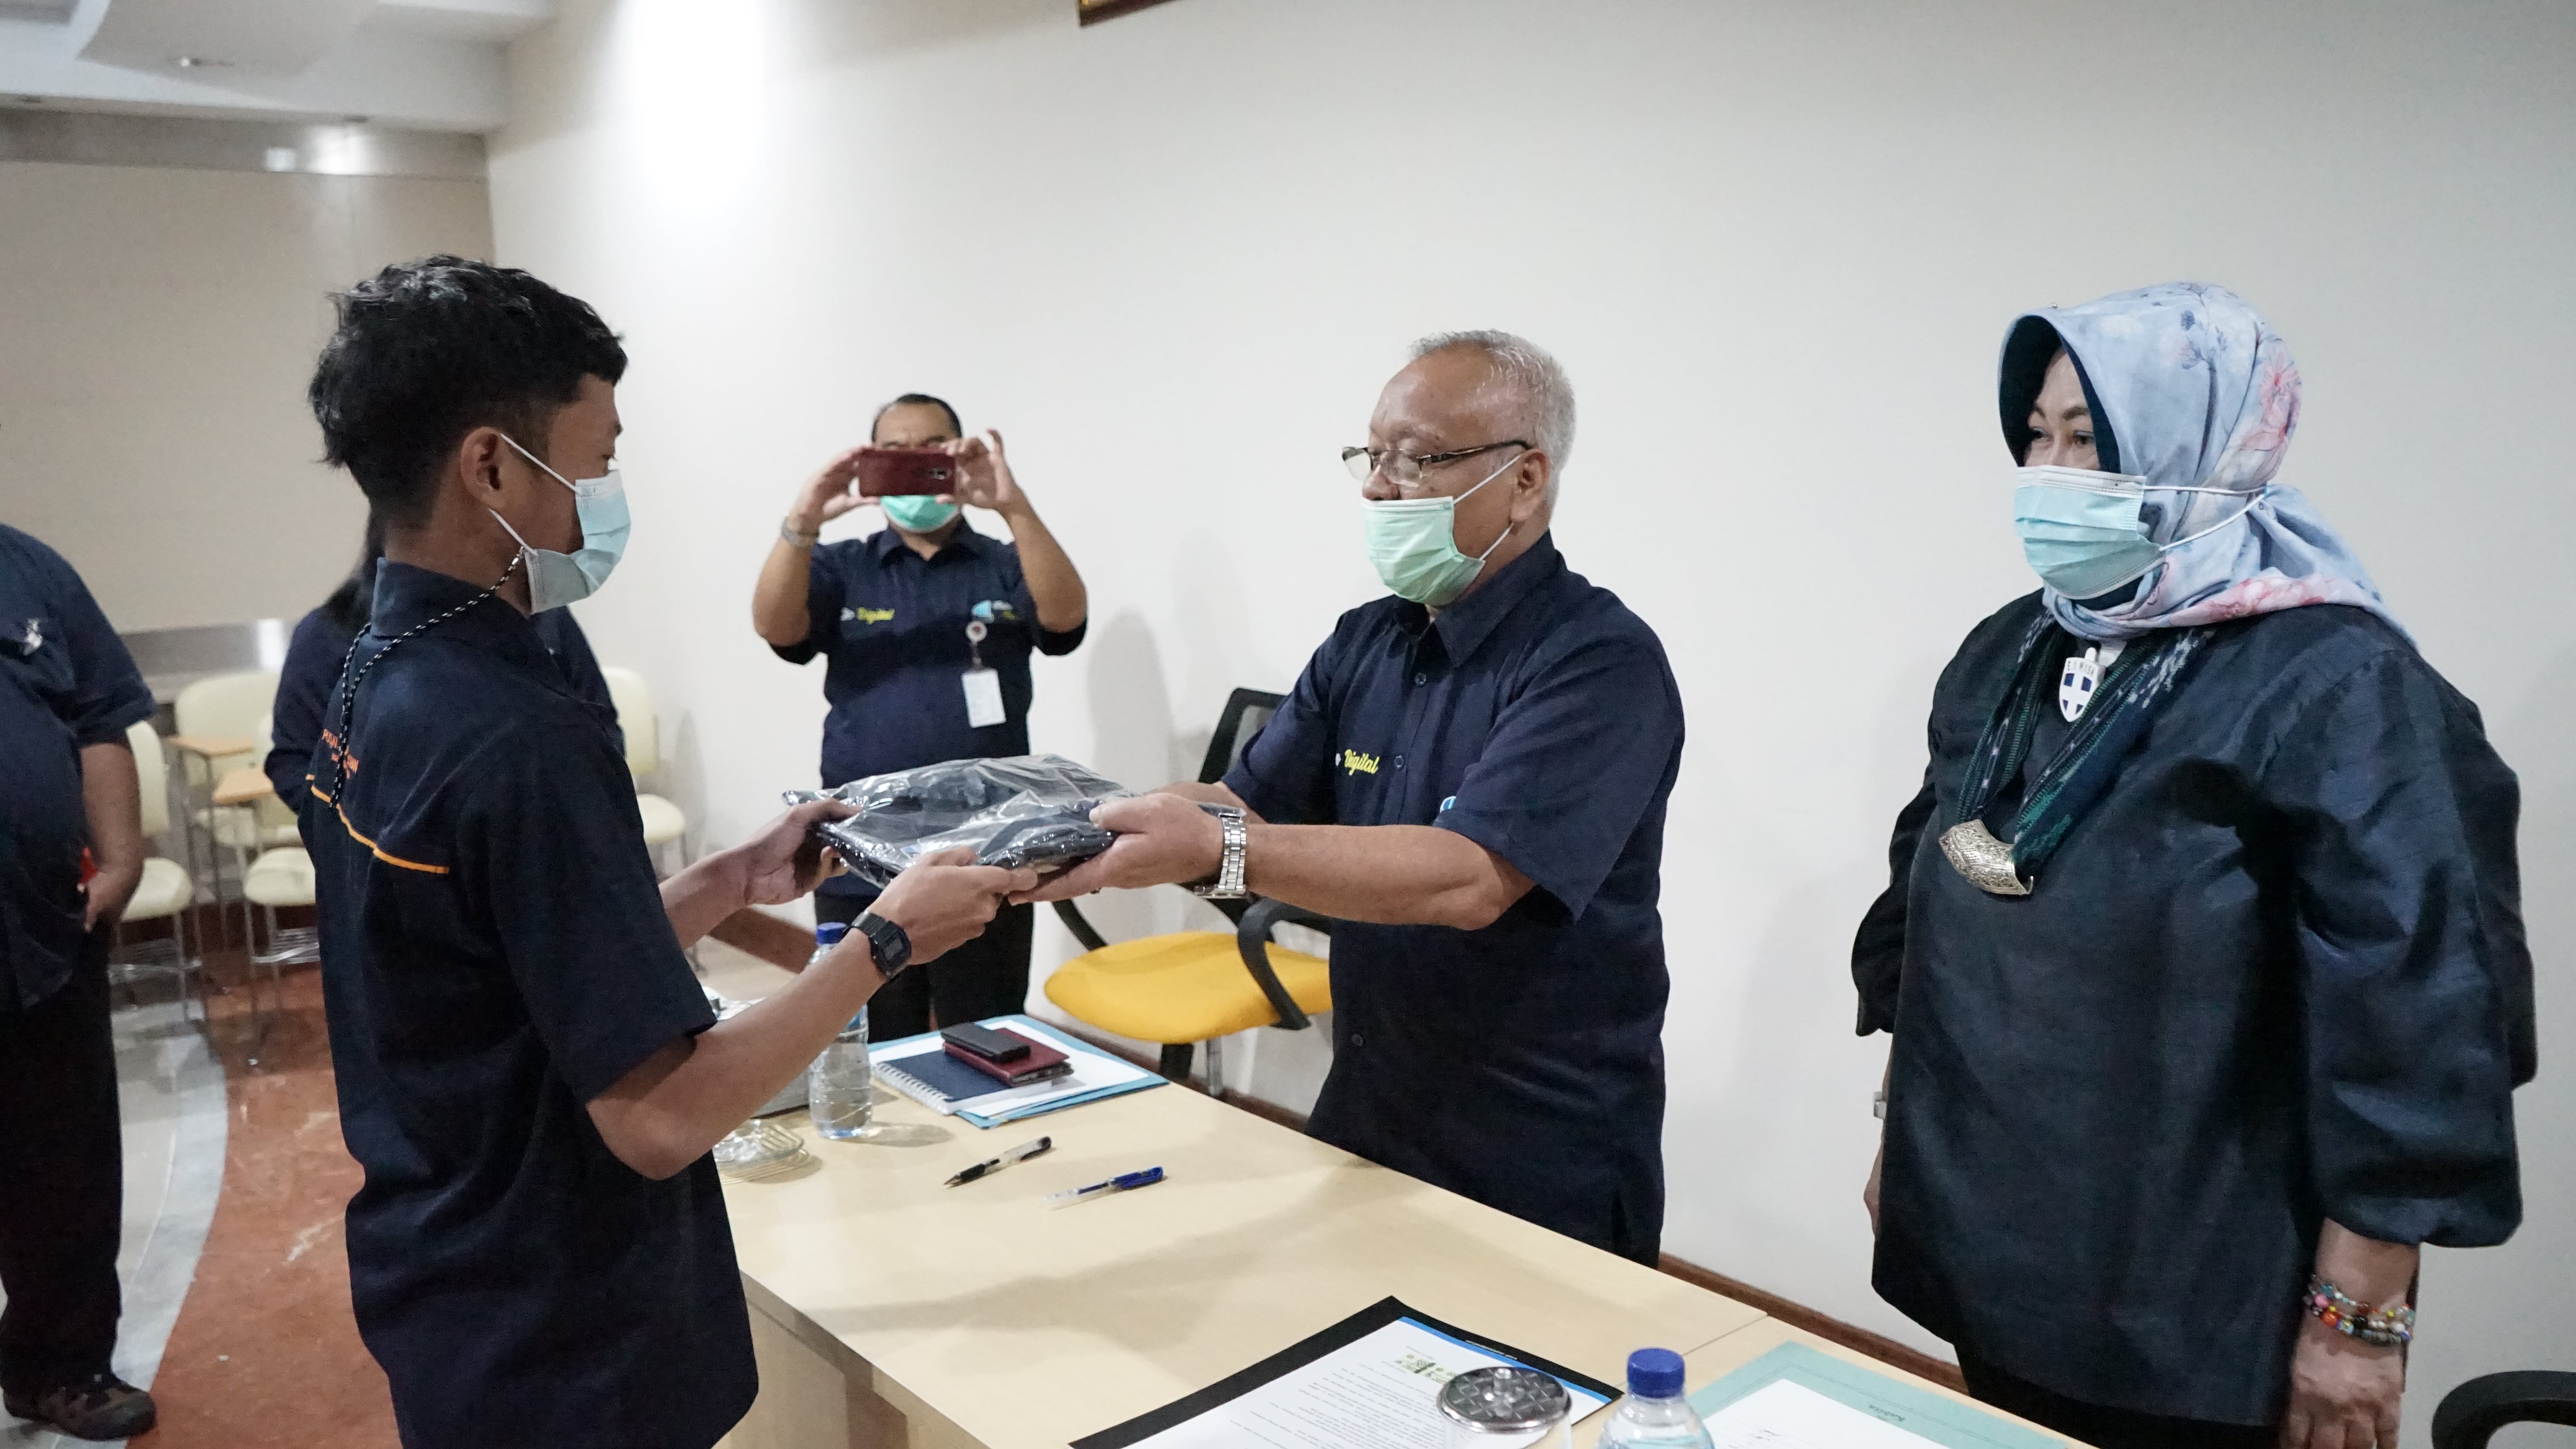 Bimbingan Teknis Pelaksana Penata Arsip dalam Rangkaian Kerja Sama Penataan Arsip PT Pelindo II (Persero) Cabang Jambi